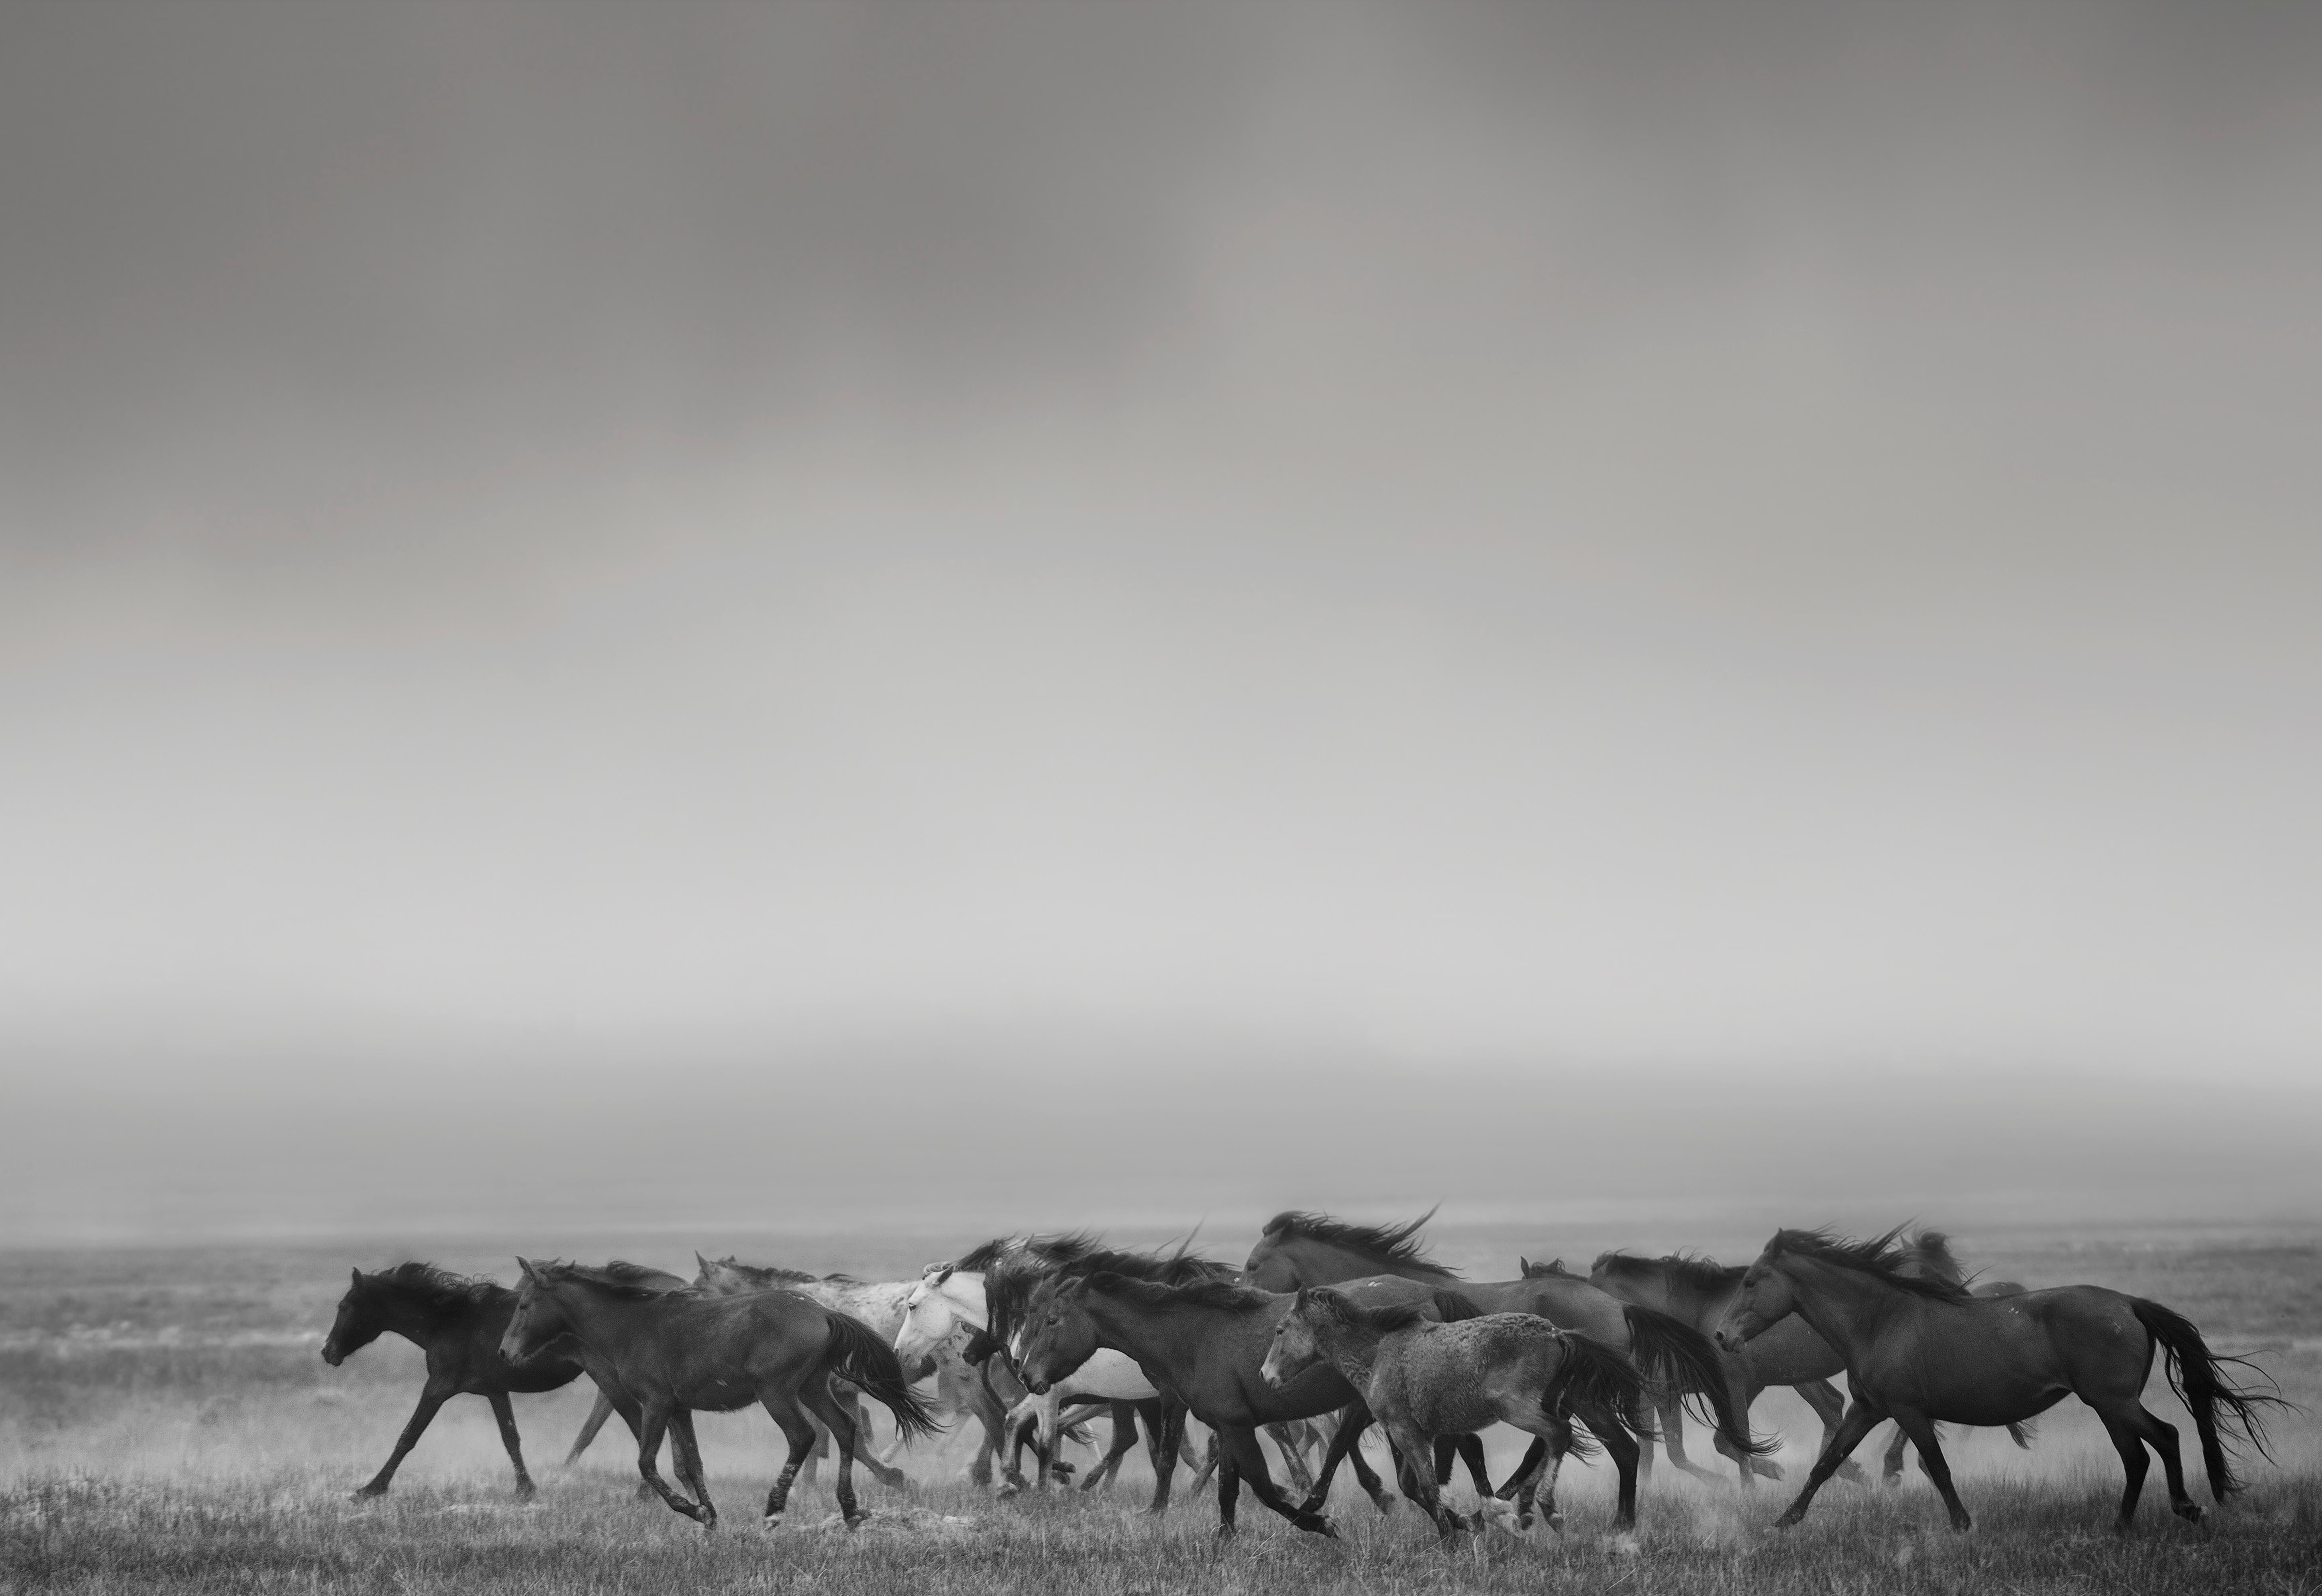 Shane Russeck Animal Print – „Dream State“ – 40x50 Schwarz-Weiß-Fotografie mit Wildpferden, Senf, unsigniert 